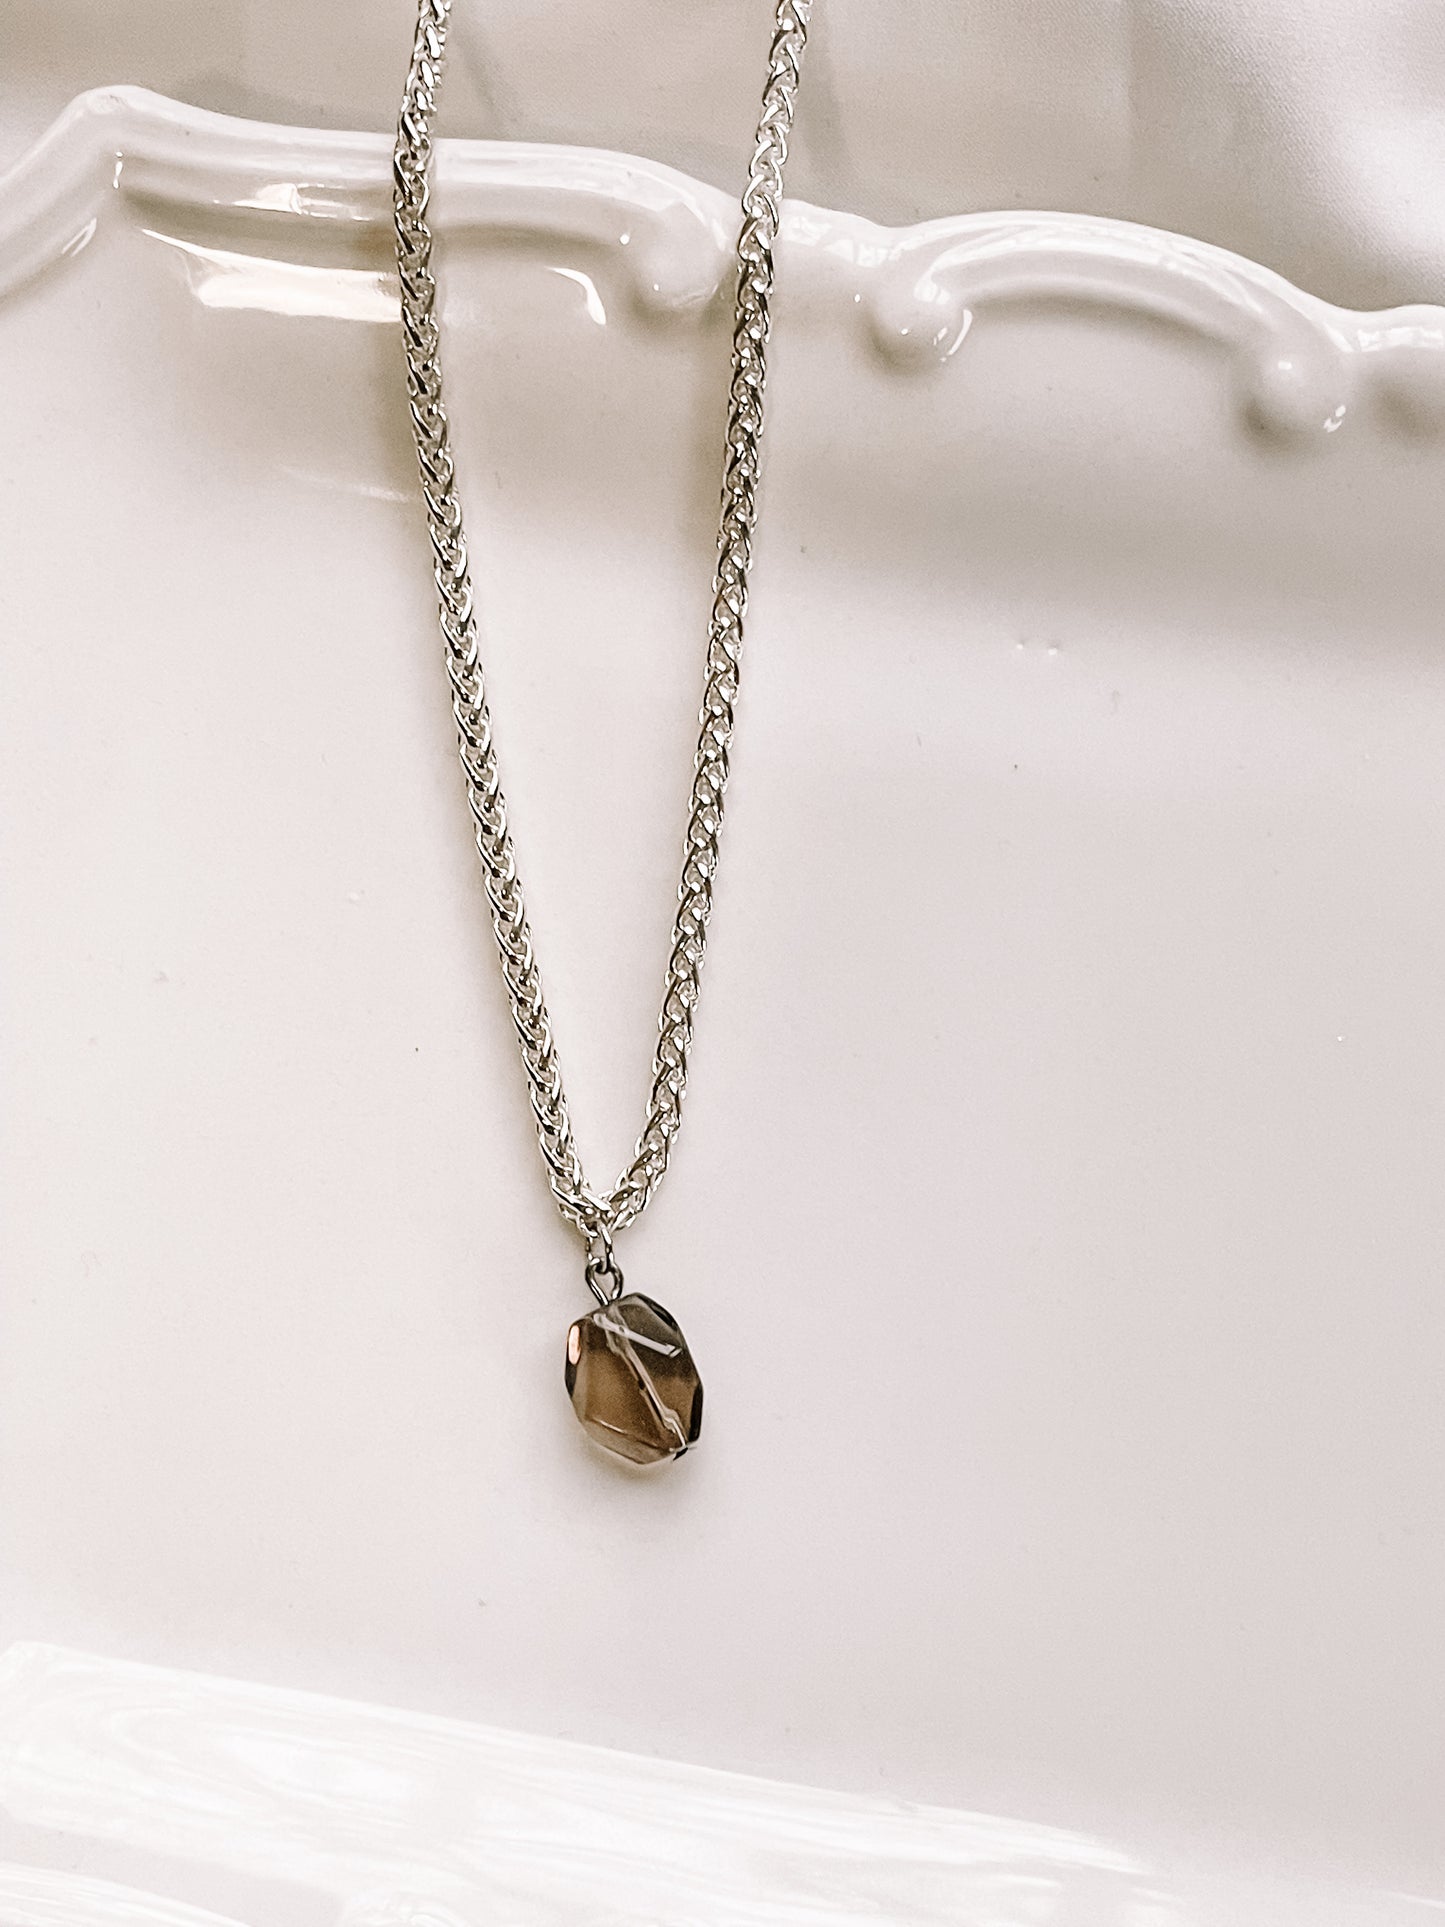 One of a kind smoky quartz pendant necklace